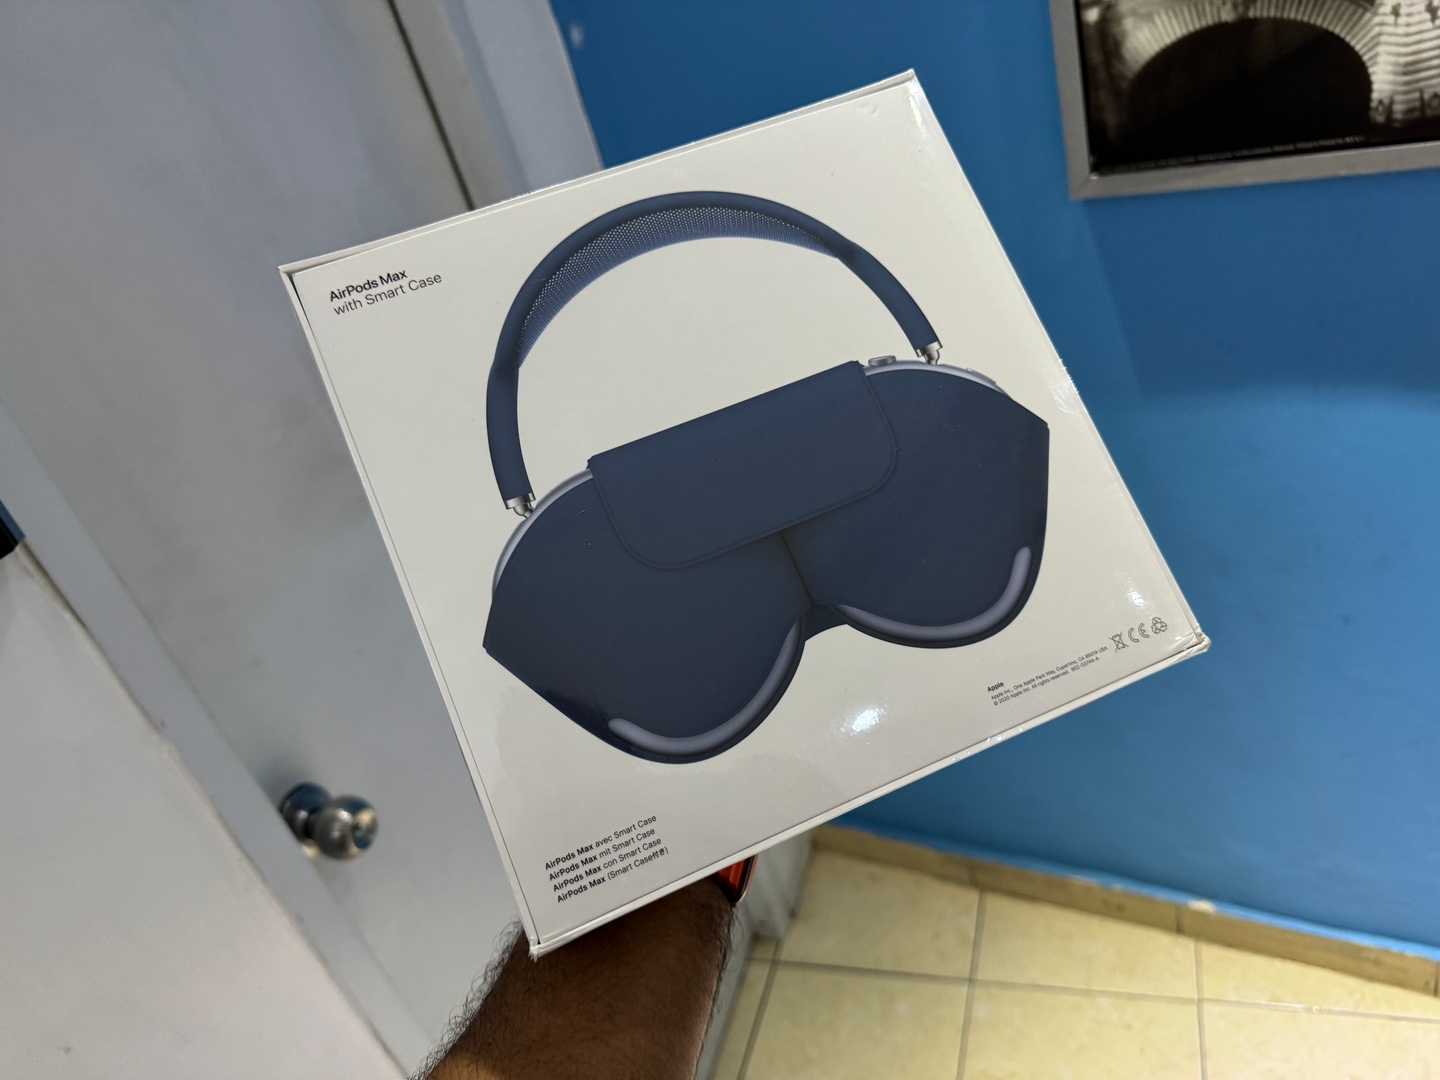 accesorios para electronica - AirPods Max Nuevos Sellados by Apple, Color: BLUE, Originales, RD$ 26,900 NEG 1